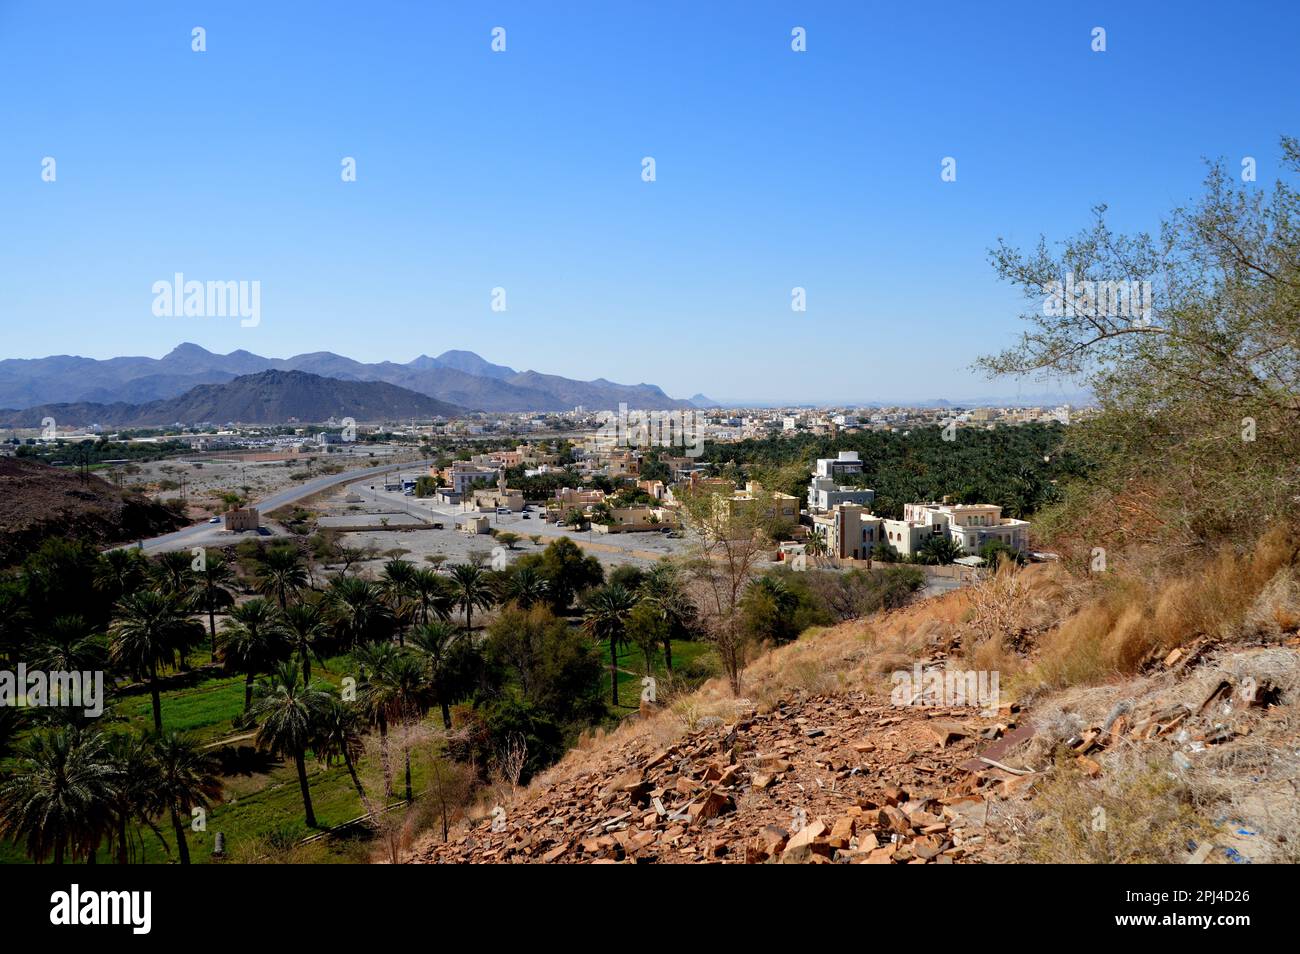 Oman, Birkat al Mawz: Blick in Richtung Nizwa mit einem Teil der modernen Stadt. Stockfoto